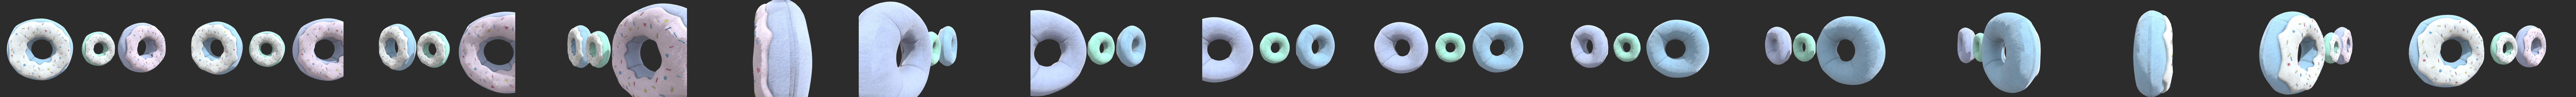 3D Donut Pillows